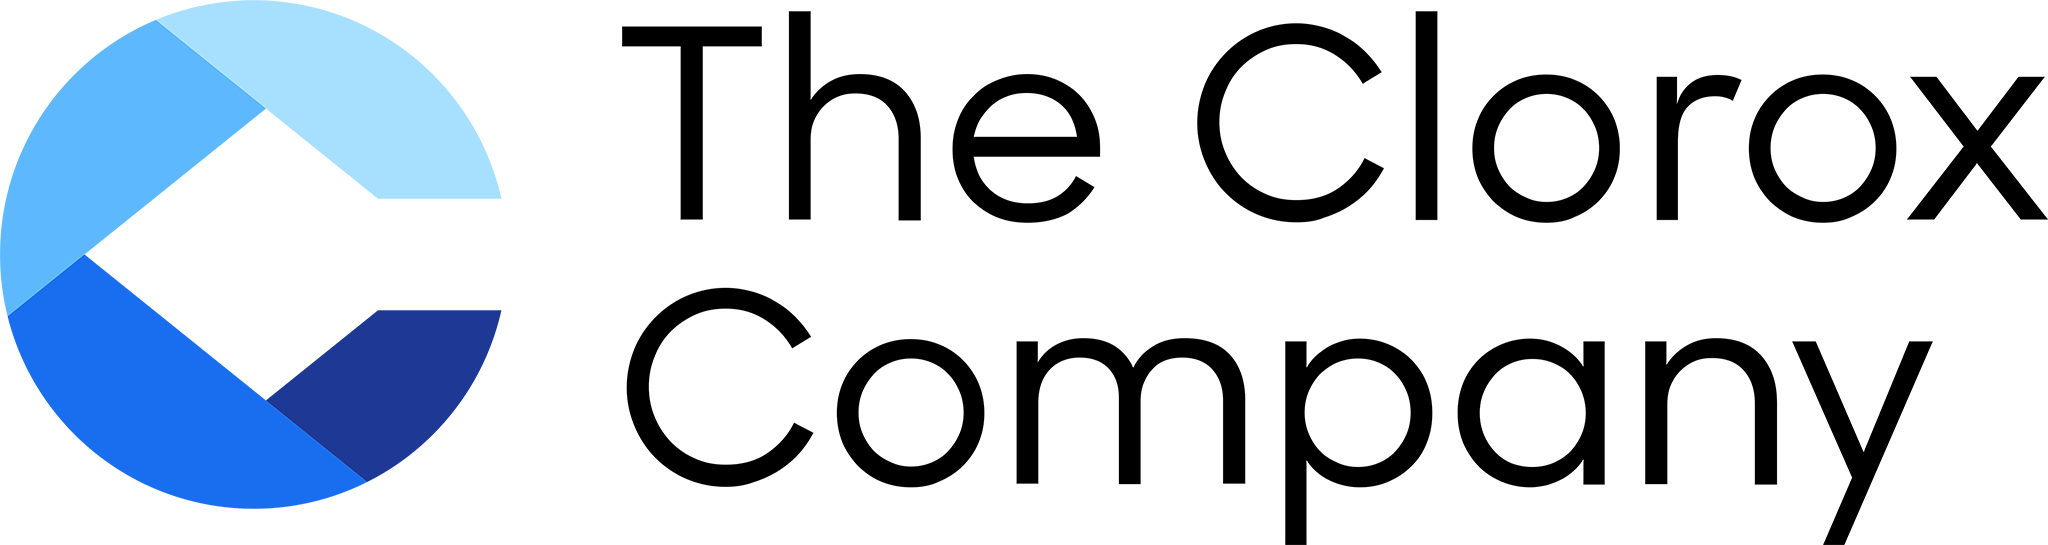 Logo Clorox nuevo 2